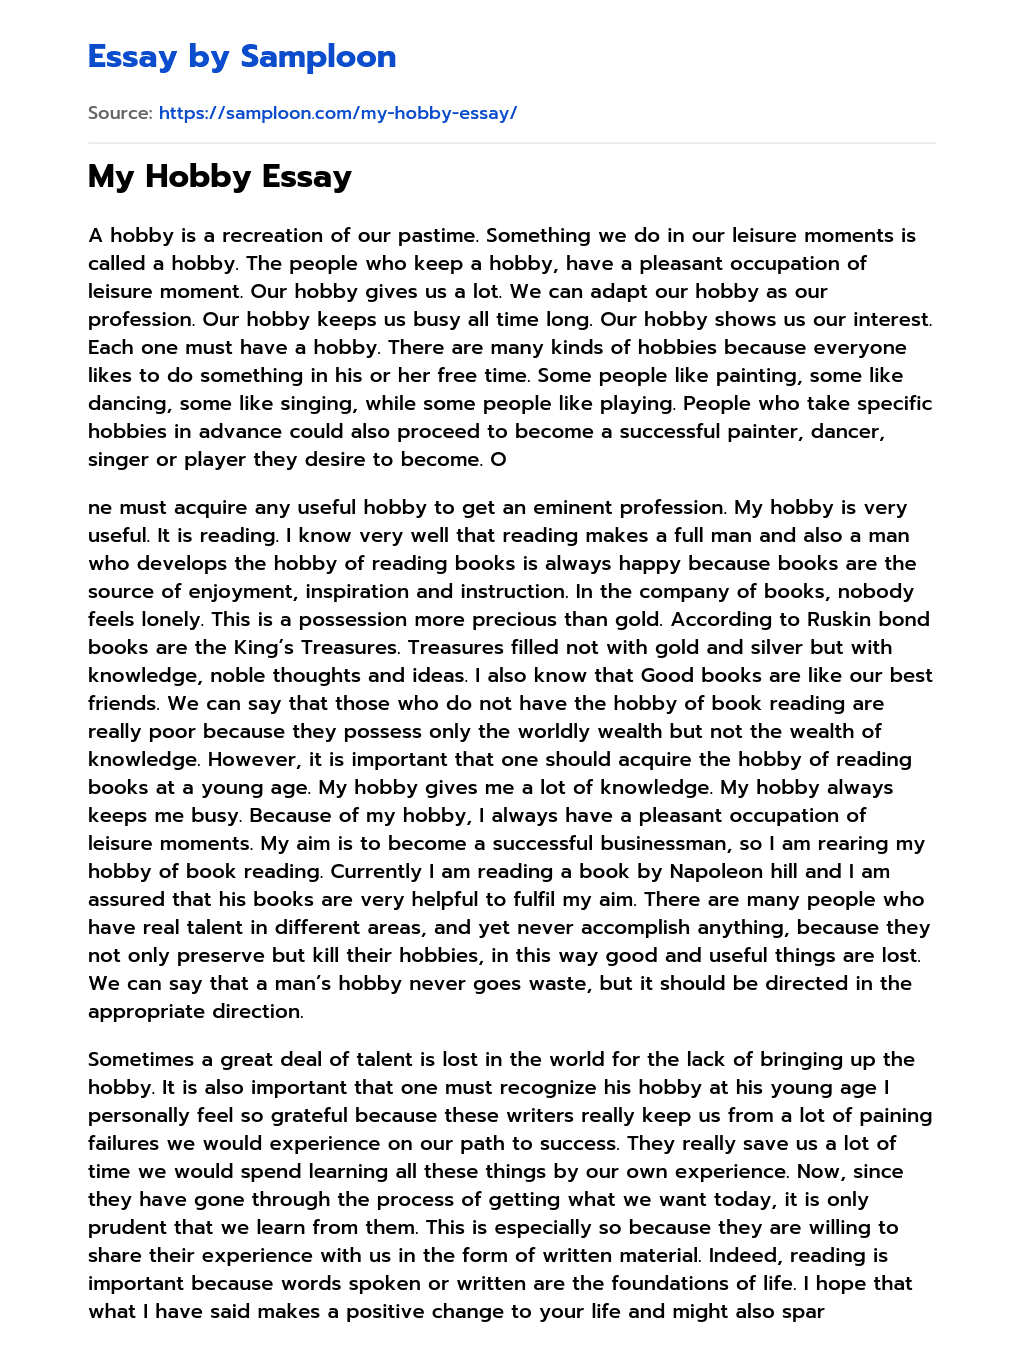 an unusual hobby essay